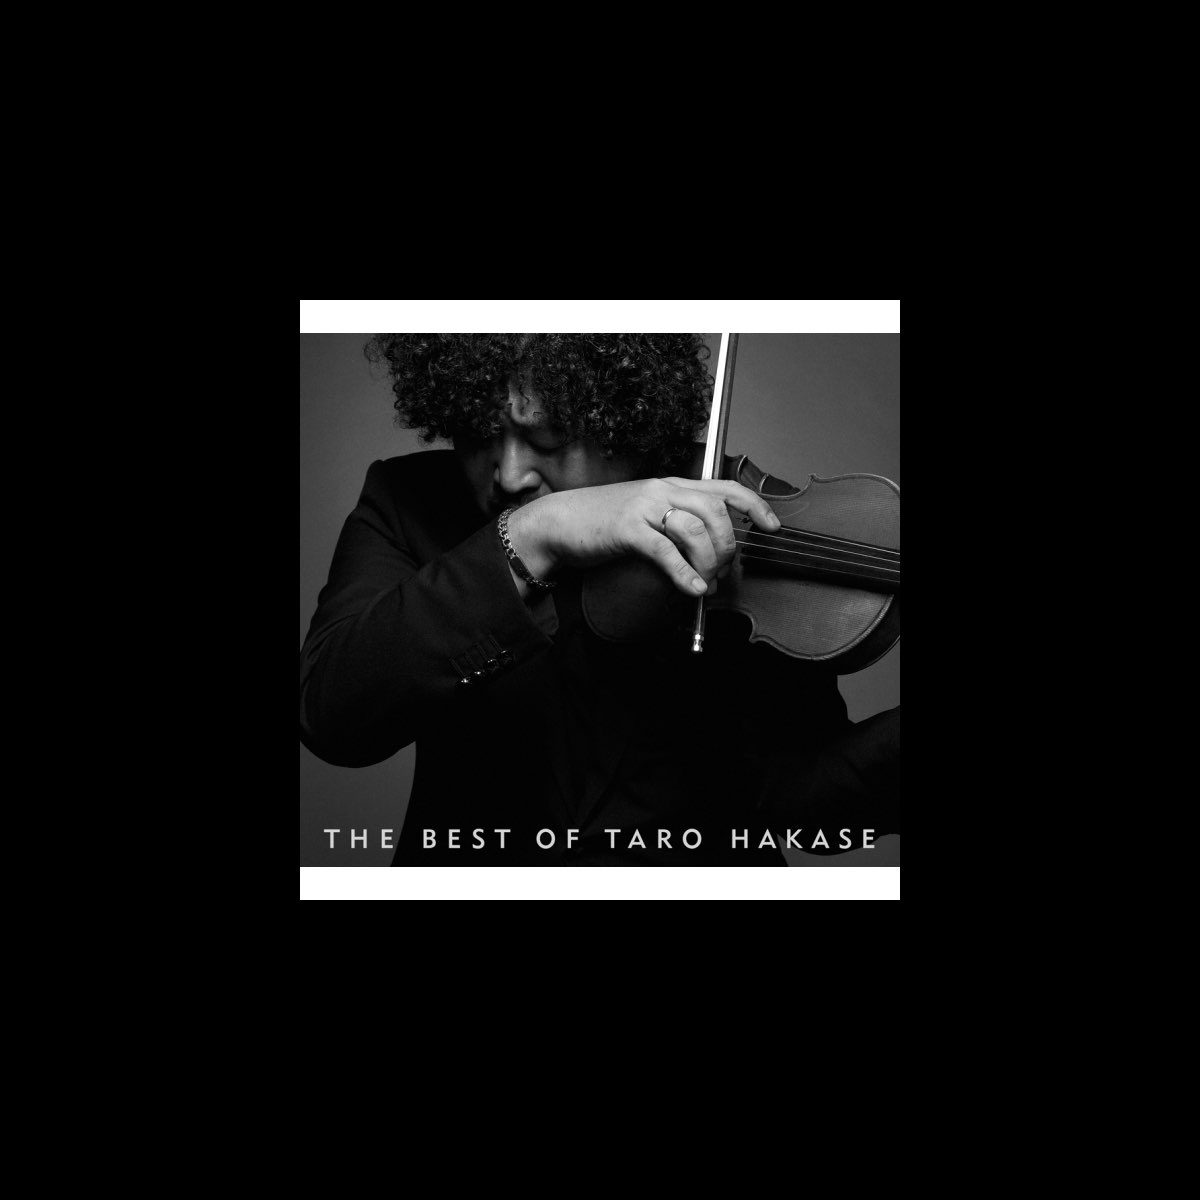 The Best of Taro Hakase - 葉加瀬太郎のアルバム - Apple Music